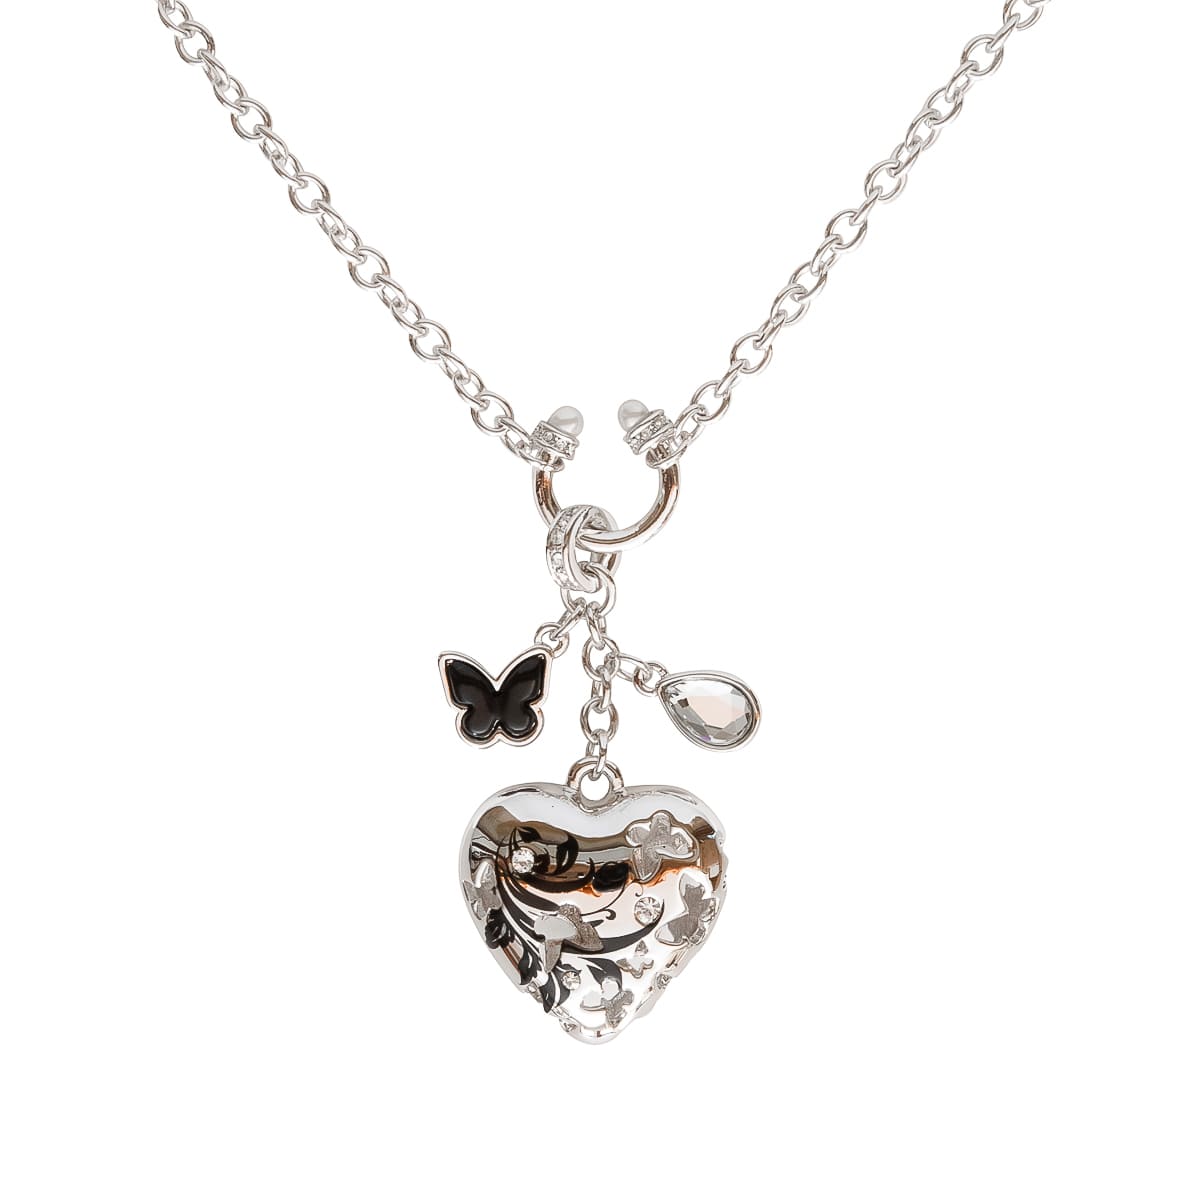 K.V. Fuchs Design Schmuck Damen Halskette in silber mit Schmetterling in schwarz und verzierter Anhänger Herz mit Zirkonia in weiß »K-2917«